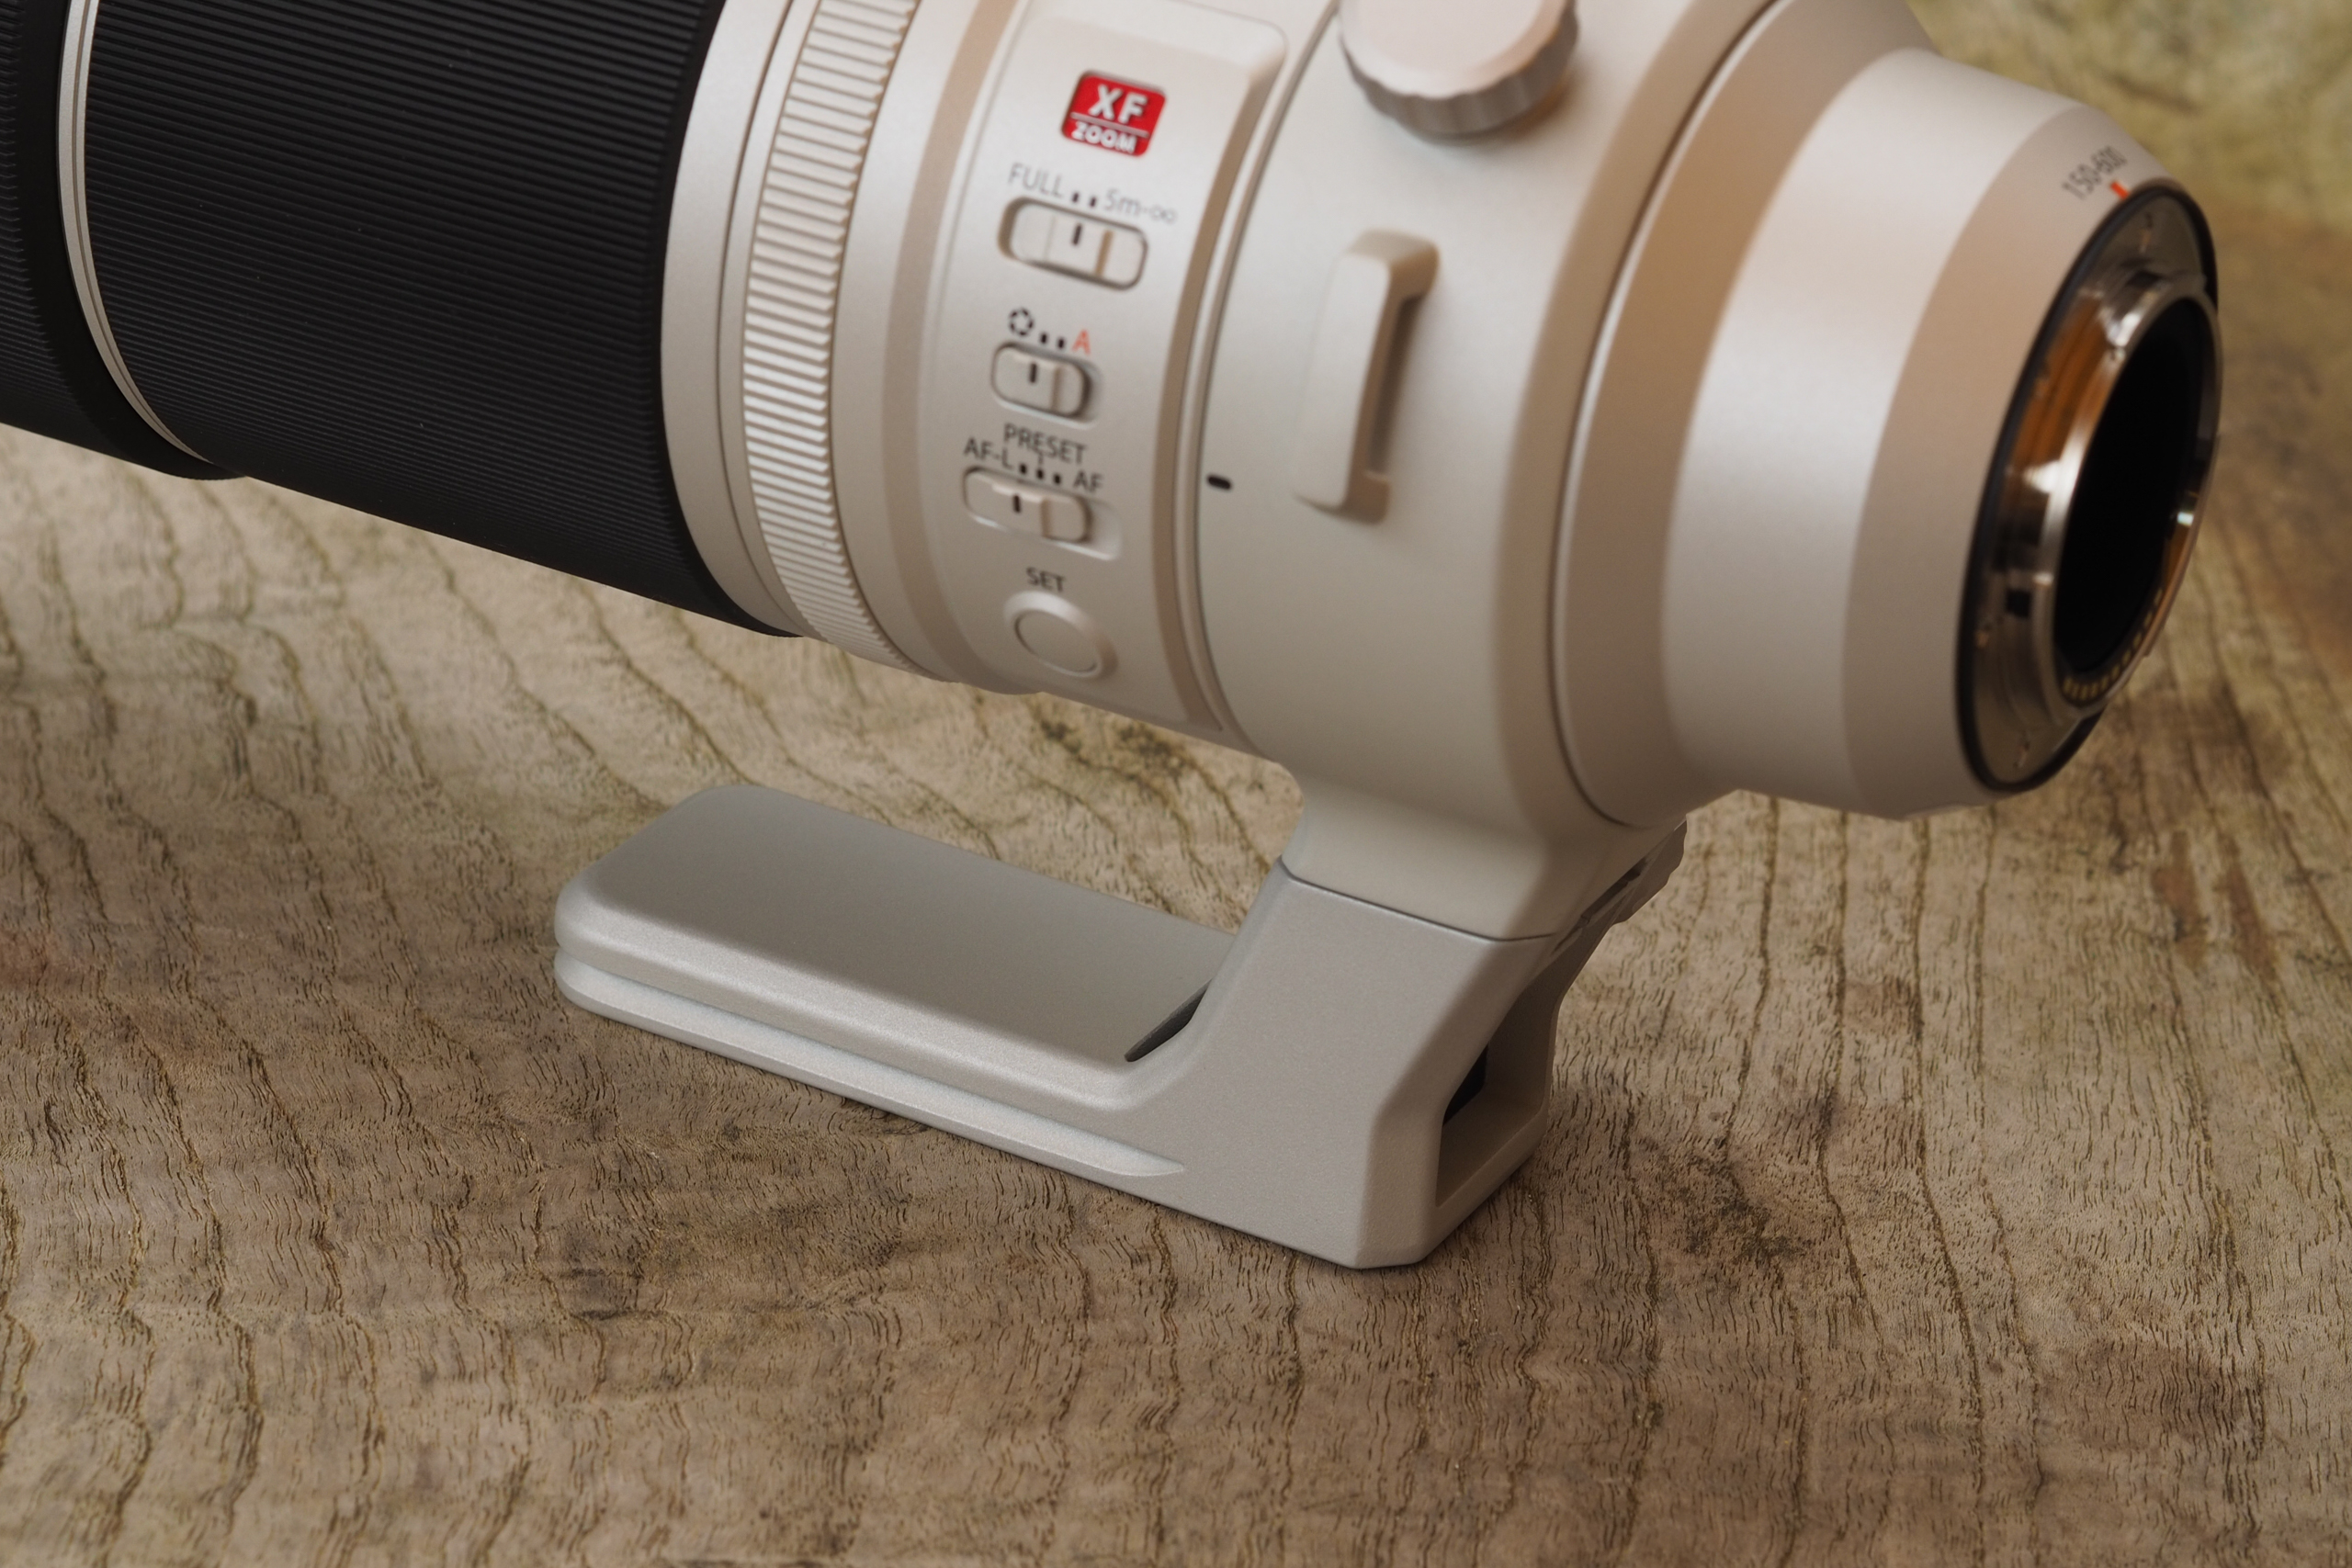 Fujifilm Fujinon XF 150-600mm F5.6-8 R LM OIS WR lens